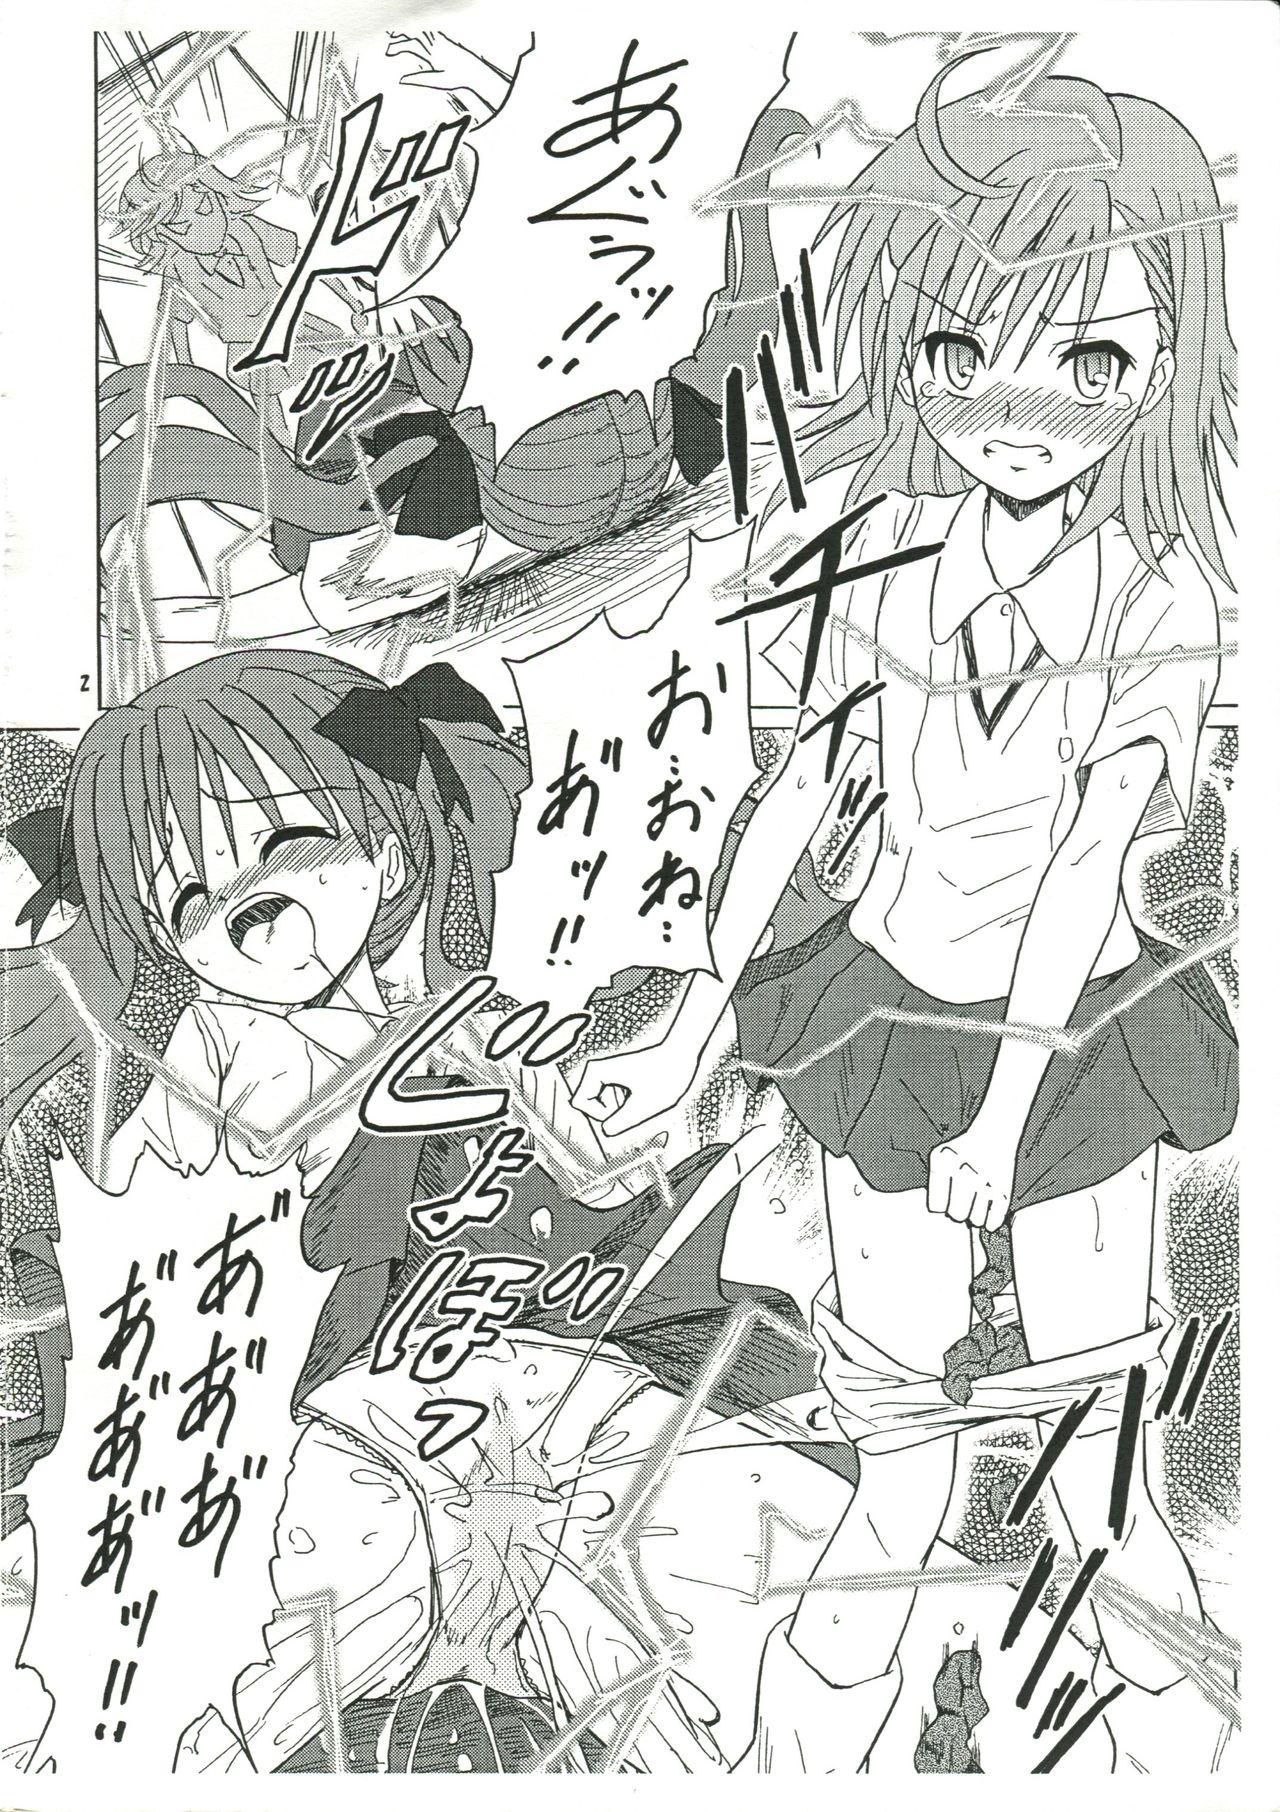 Trans Chirashi no Ura Vol. 3 - Toaru kagaku no railgun Toaru majutsu no index Pawg - Page 3